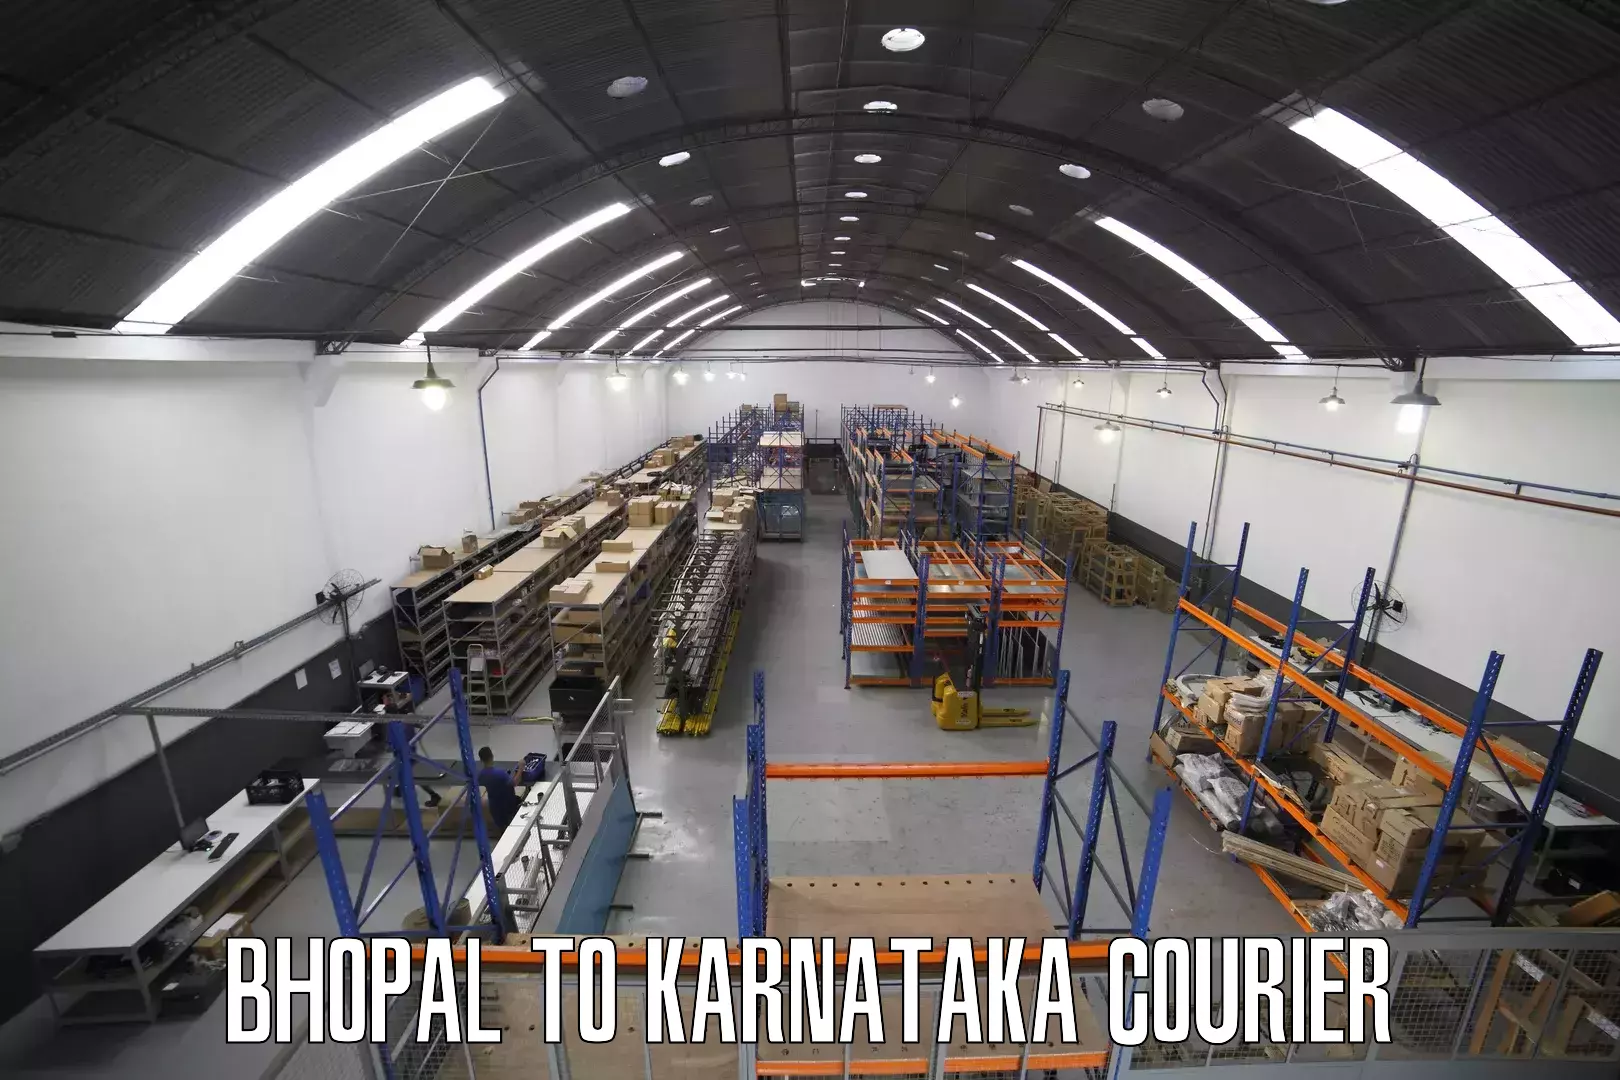 Quality courier partnerships Bhopal to Karnataka